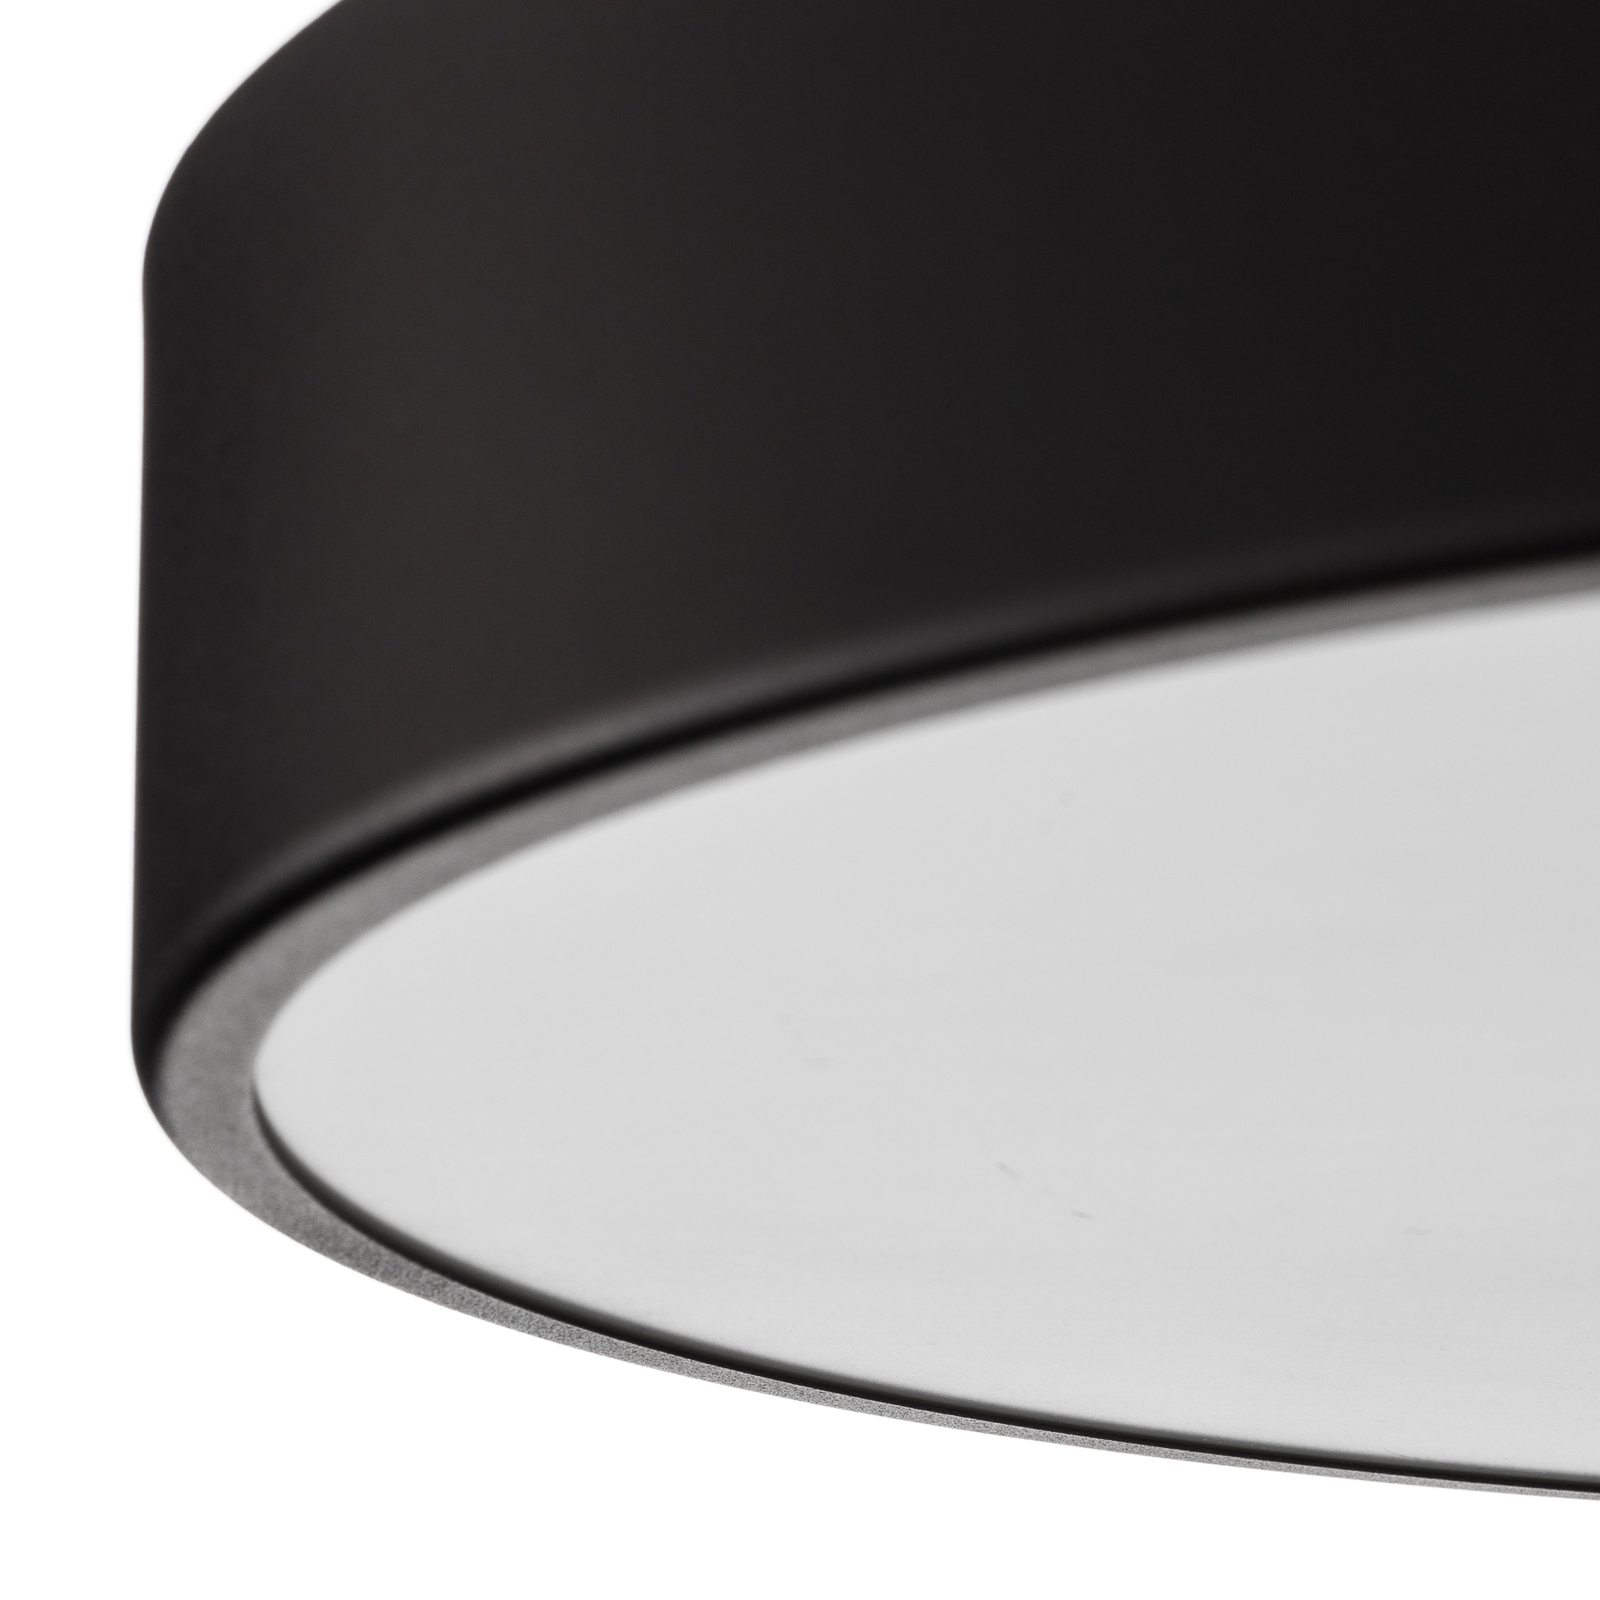 Lampa sufitowa Cleo, Ø 50 cm, czarna